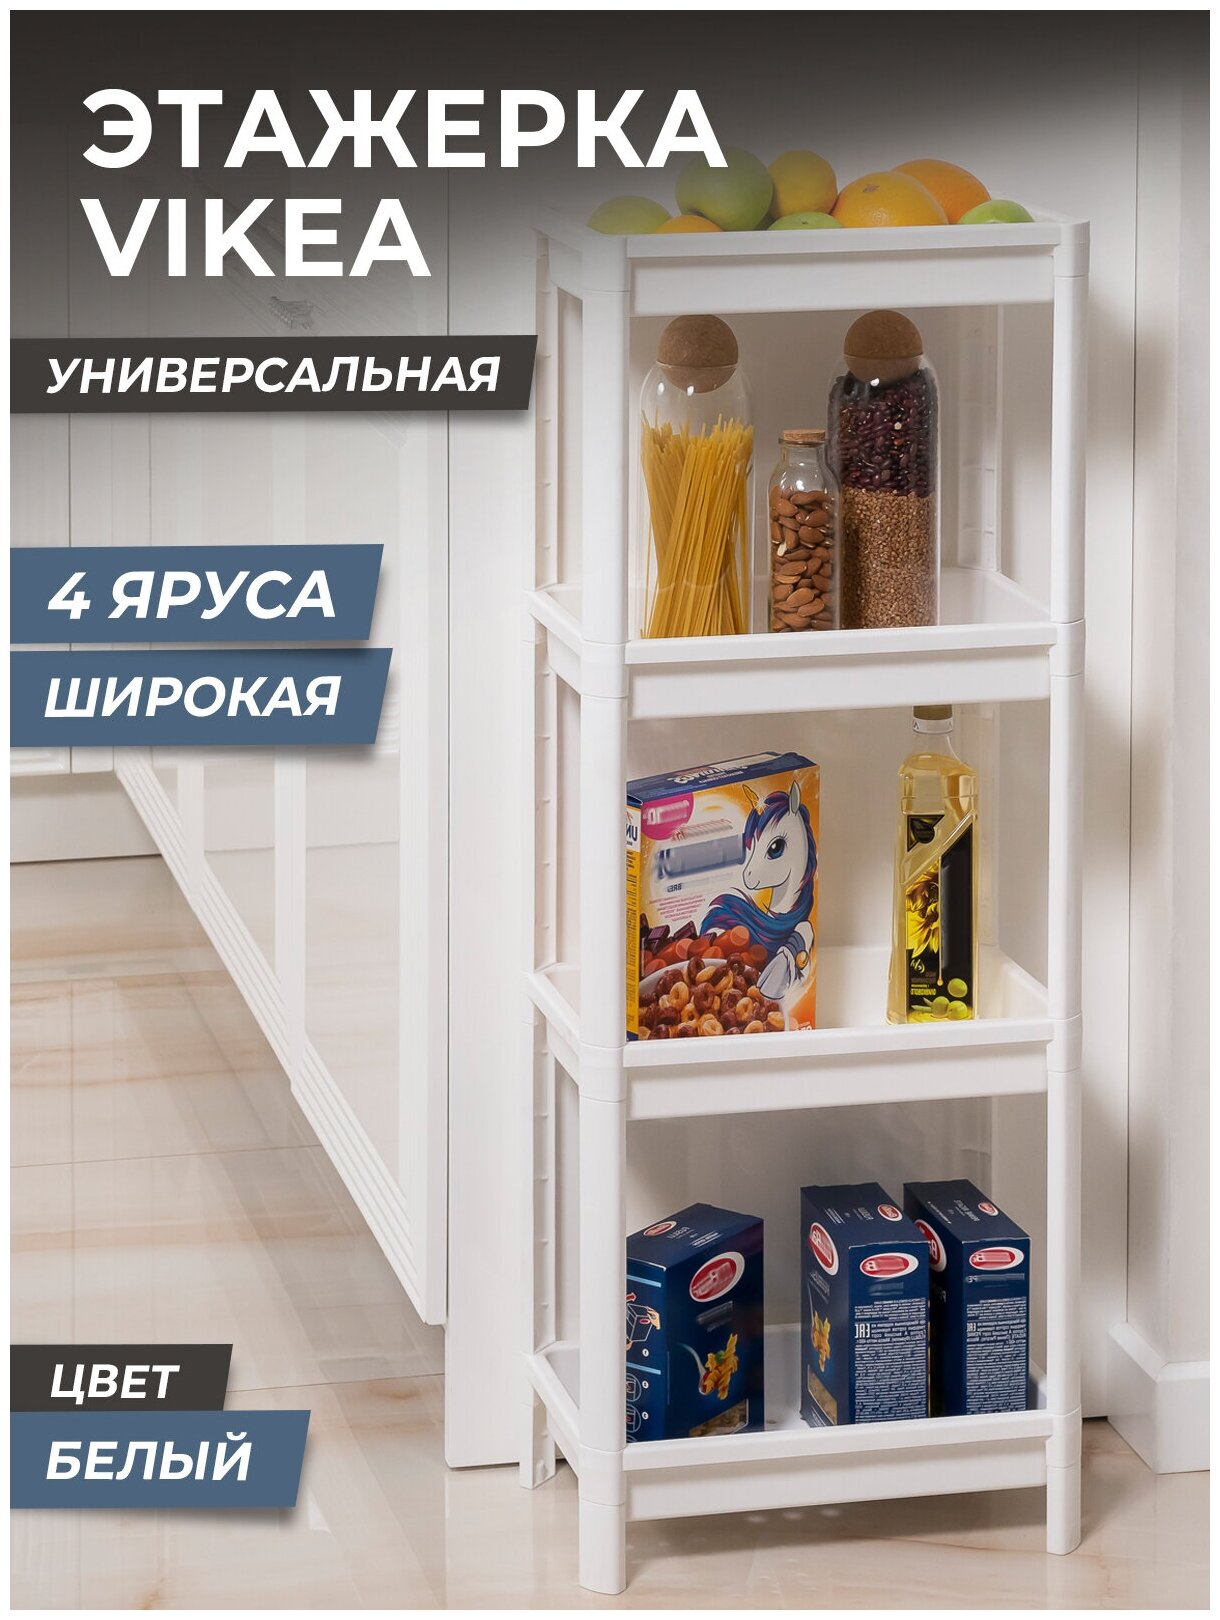 Этажерка для хранения вещей 4х ярусная VIKEA широкая, цвет белый / Стеллаж напольный для кухни / Этажерка для ванной универсальная пластиковая